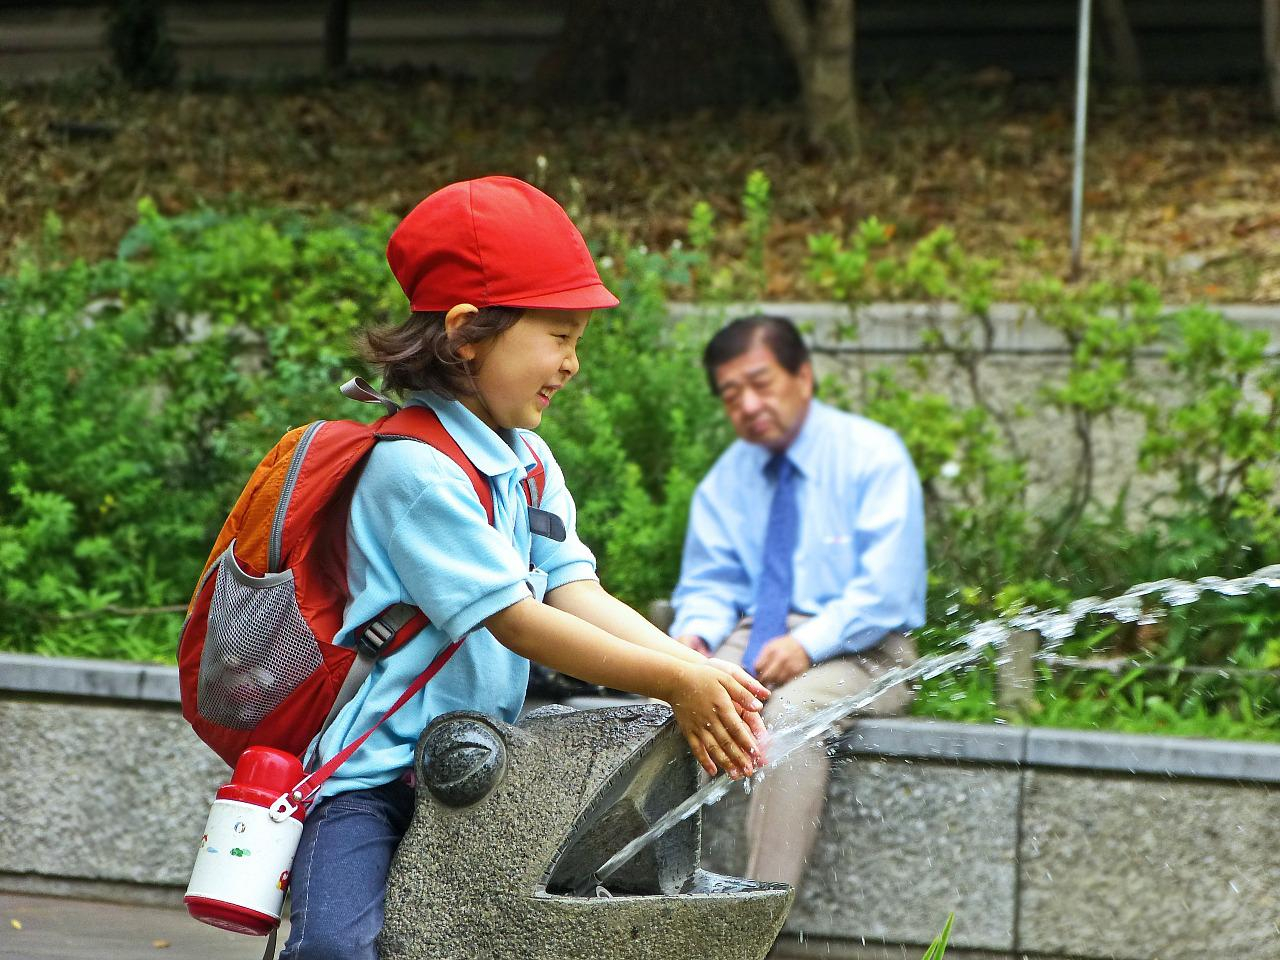 In Giappone si può tornare a parlare a scuola dopo due anni